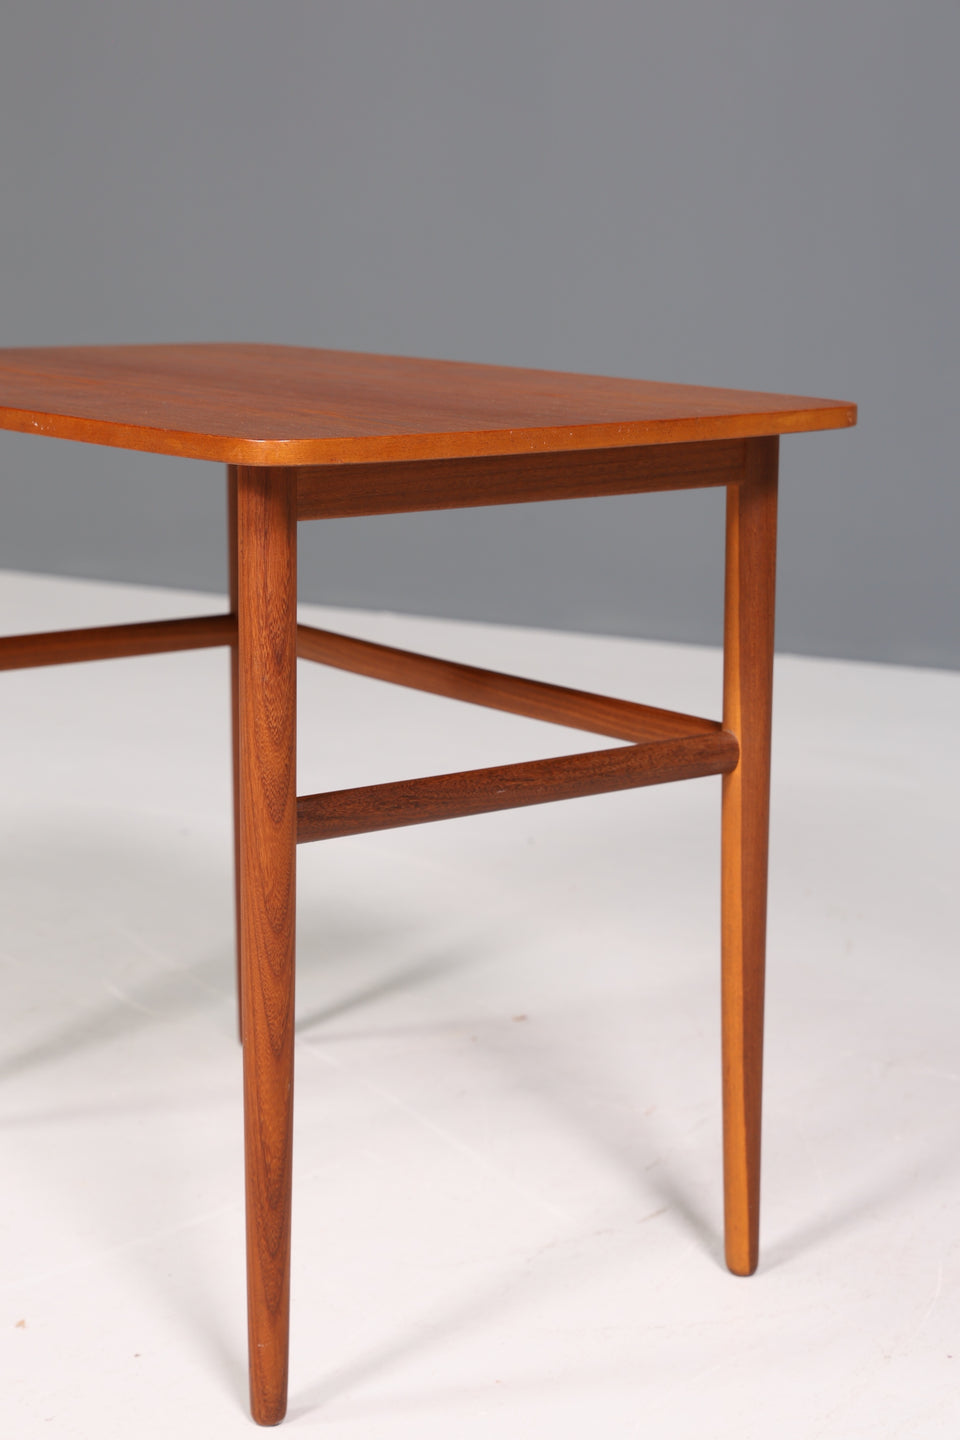 Schlichter Beistelltisch "Made in Denmark" Teak Holz Tisch Ablagetisch